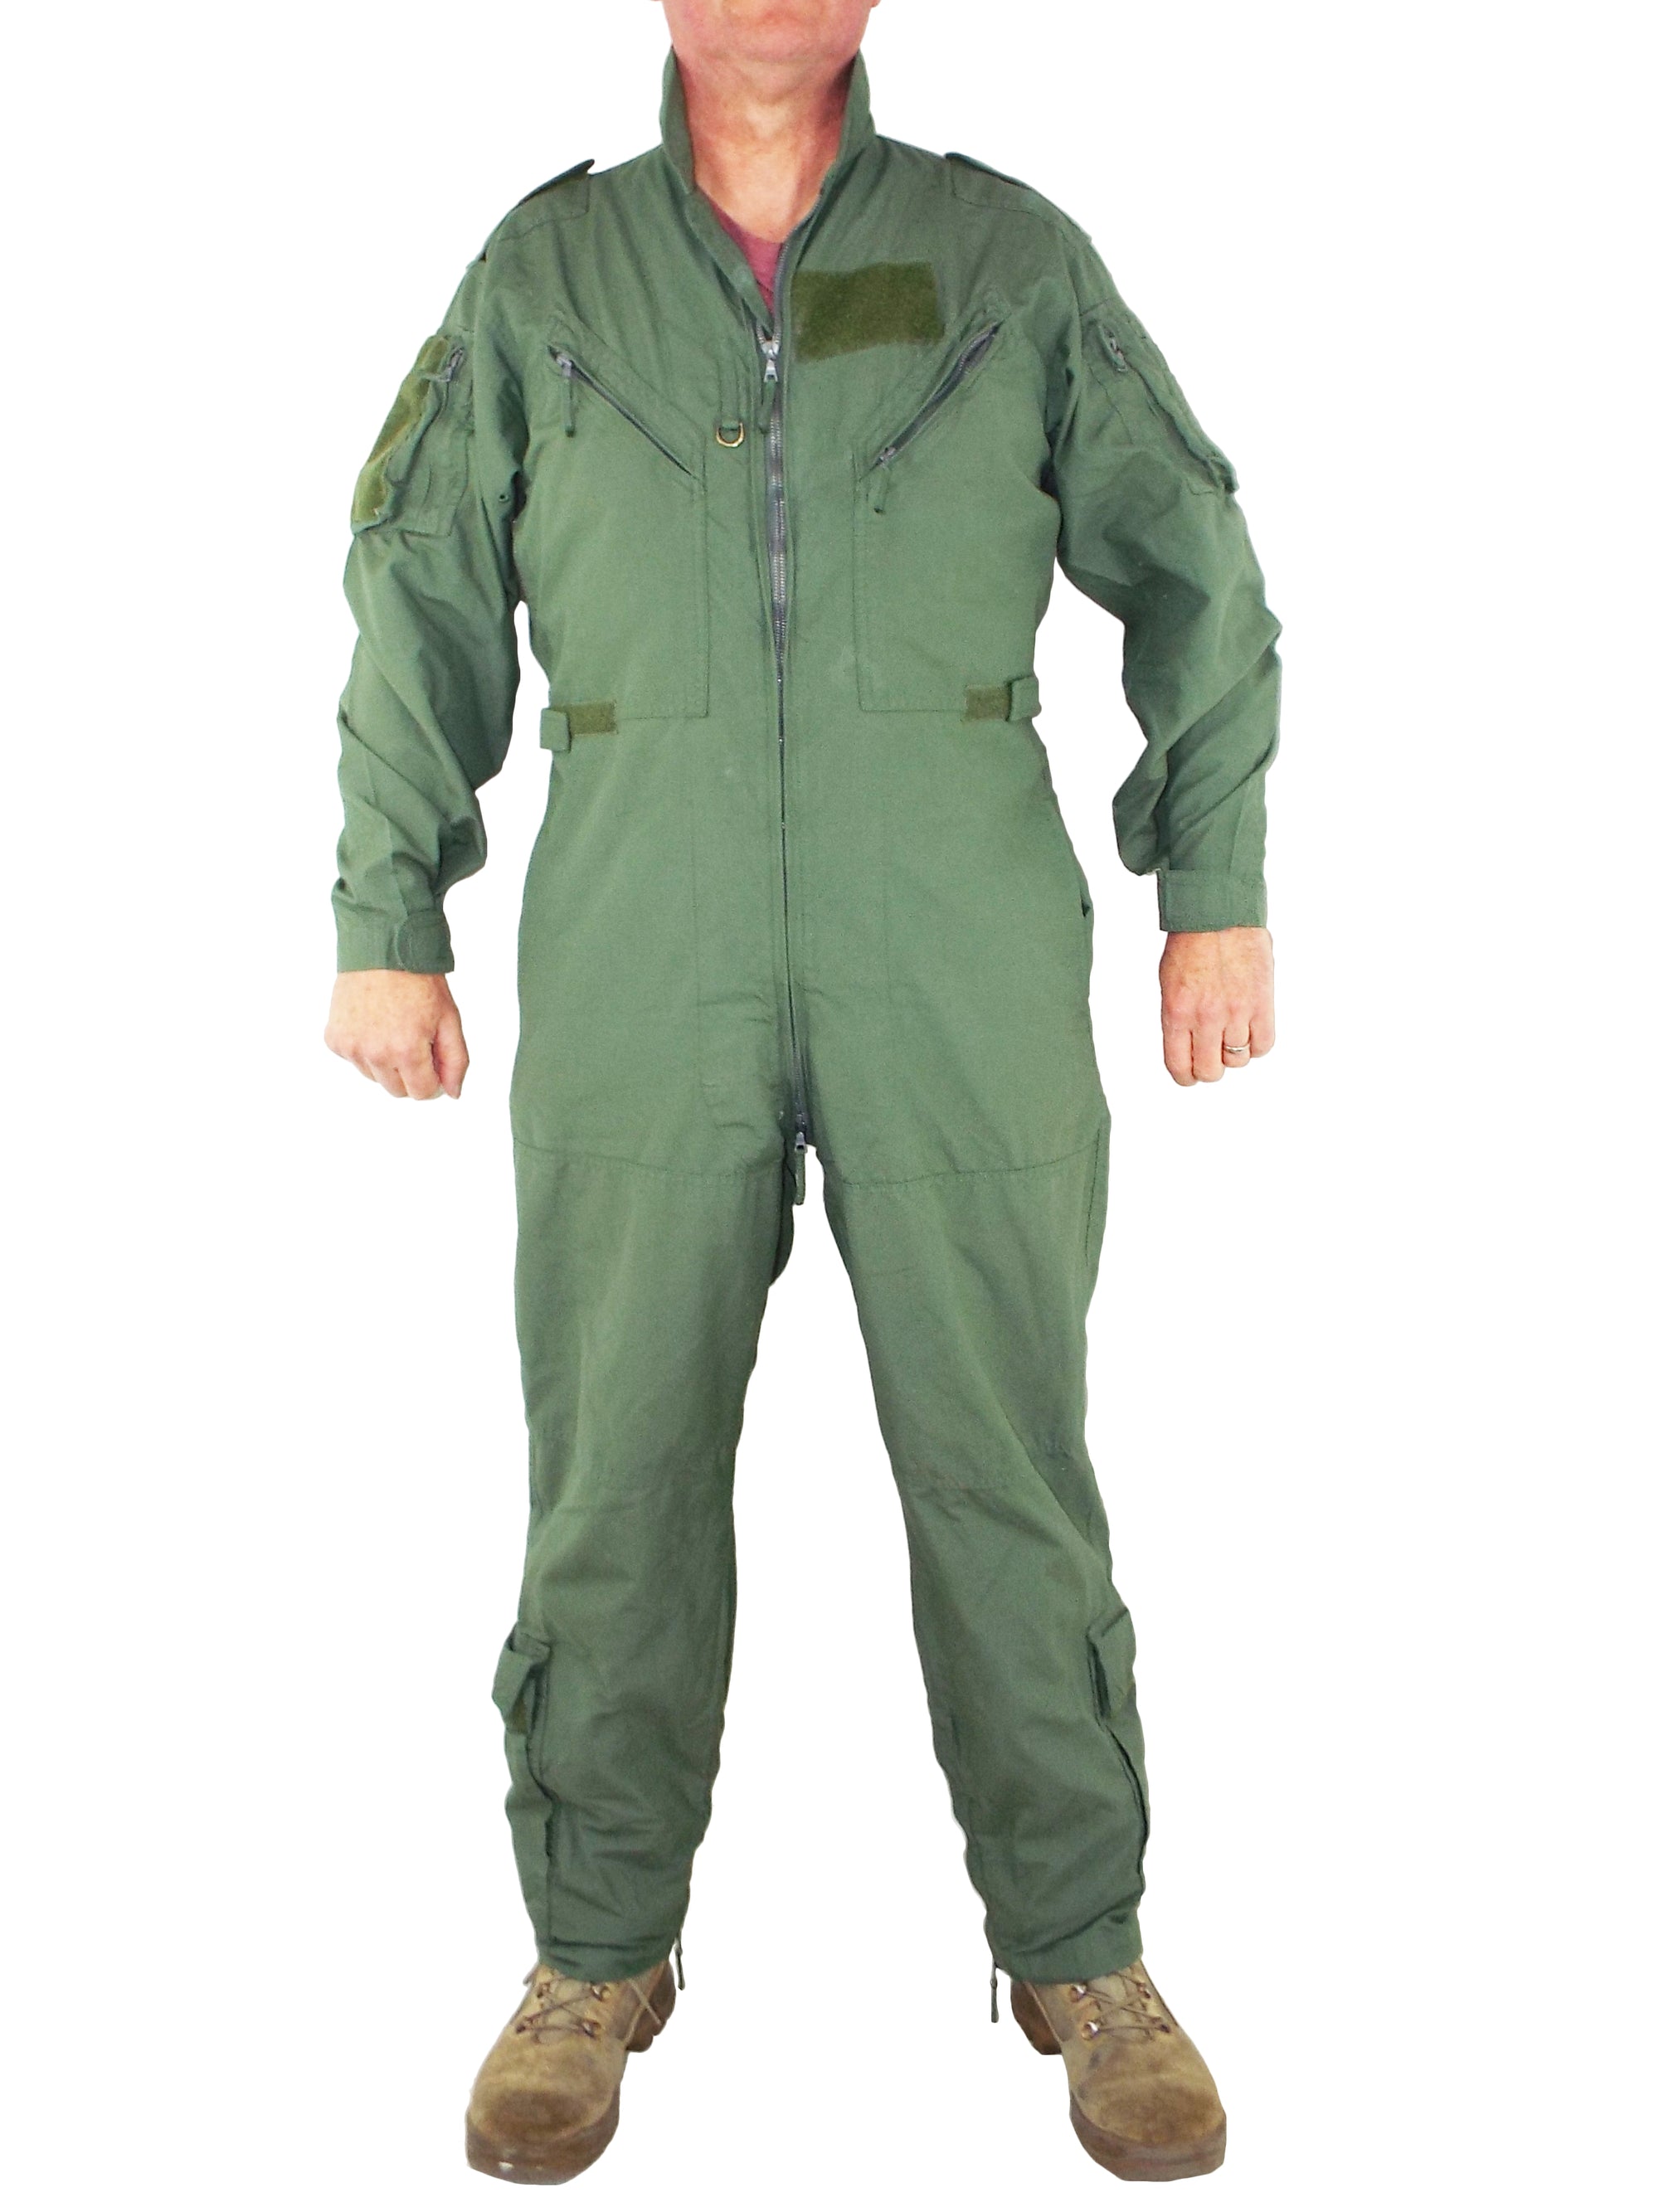 British RAF Flying Suit - Sage Green - slim fit - NO KNEE POCKETS - Grade 1